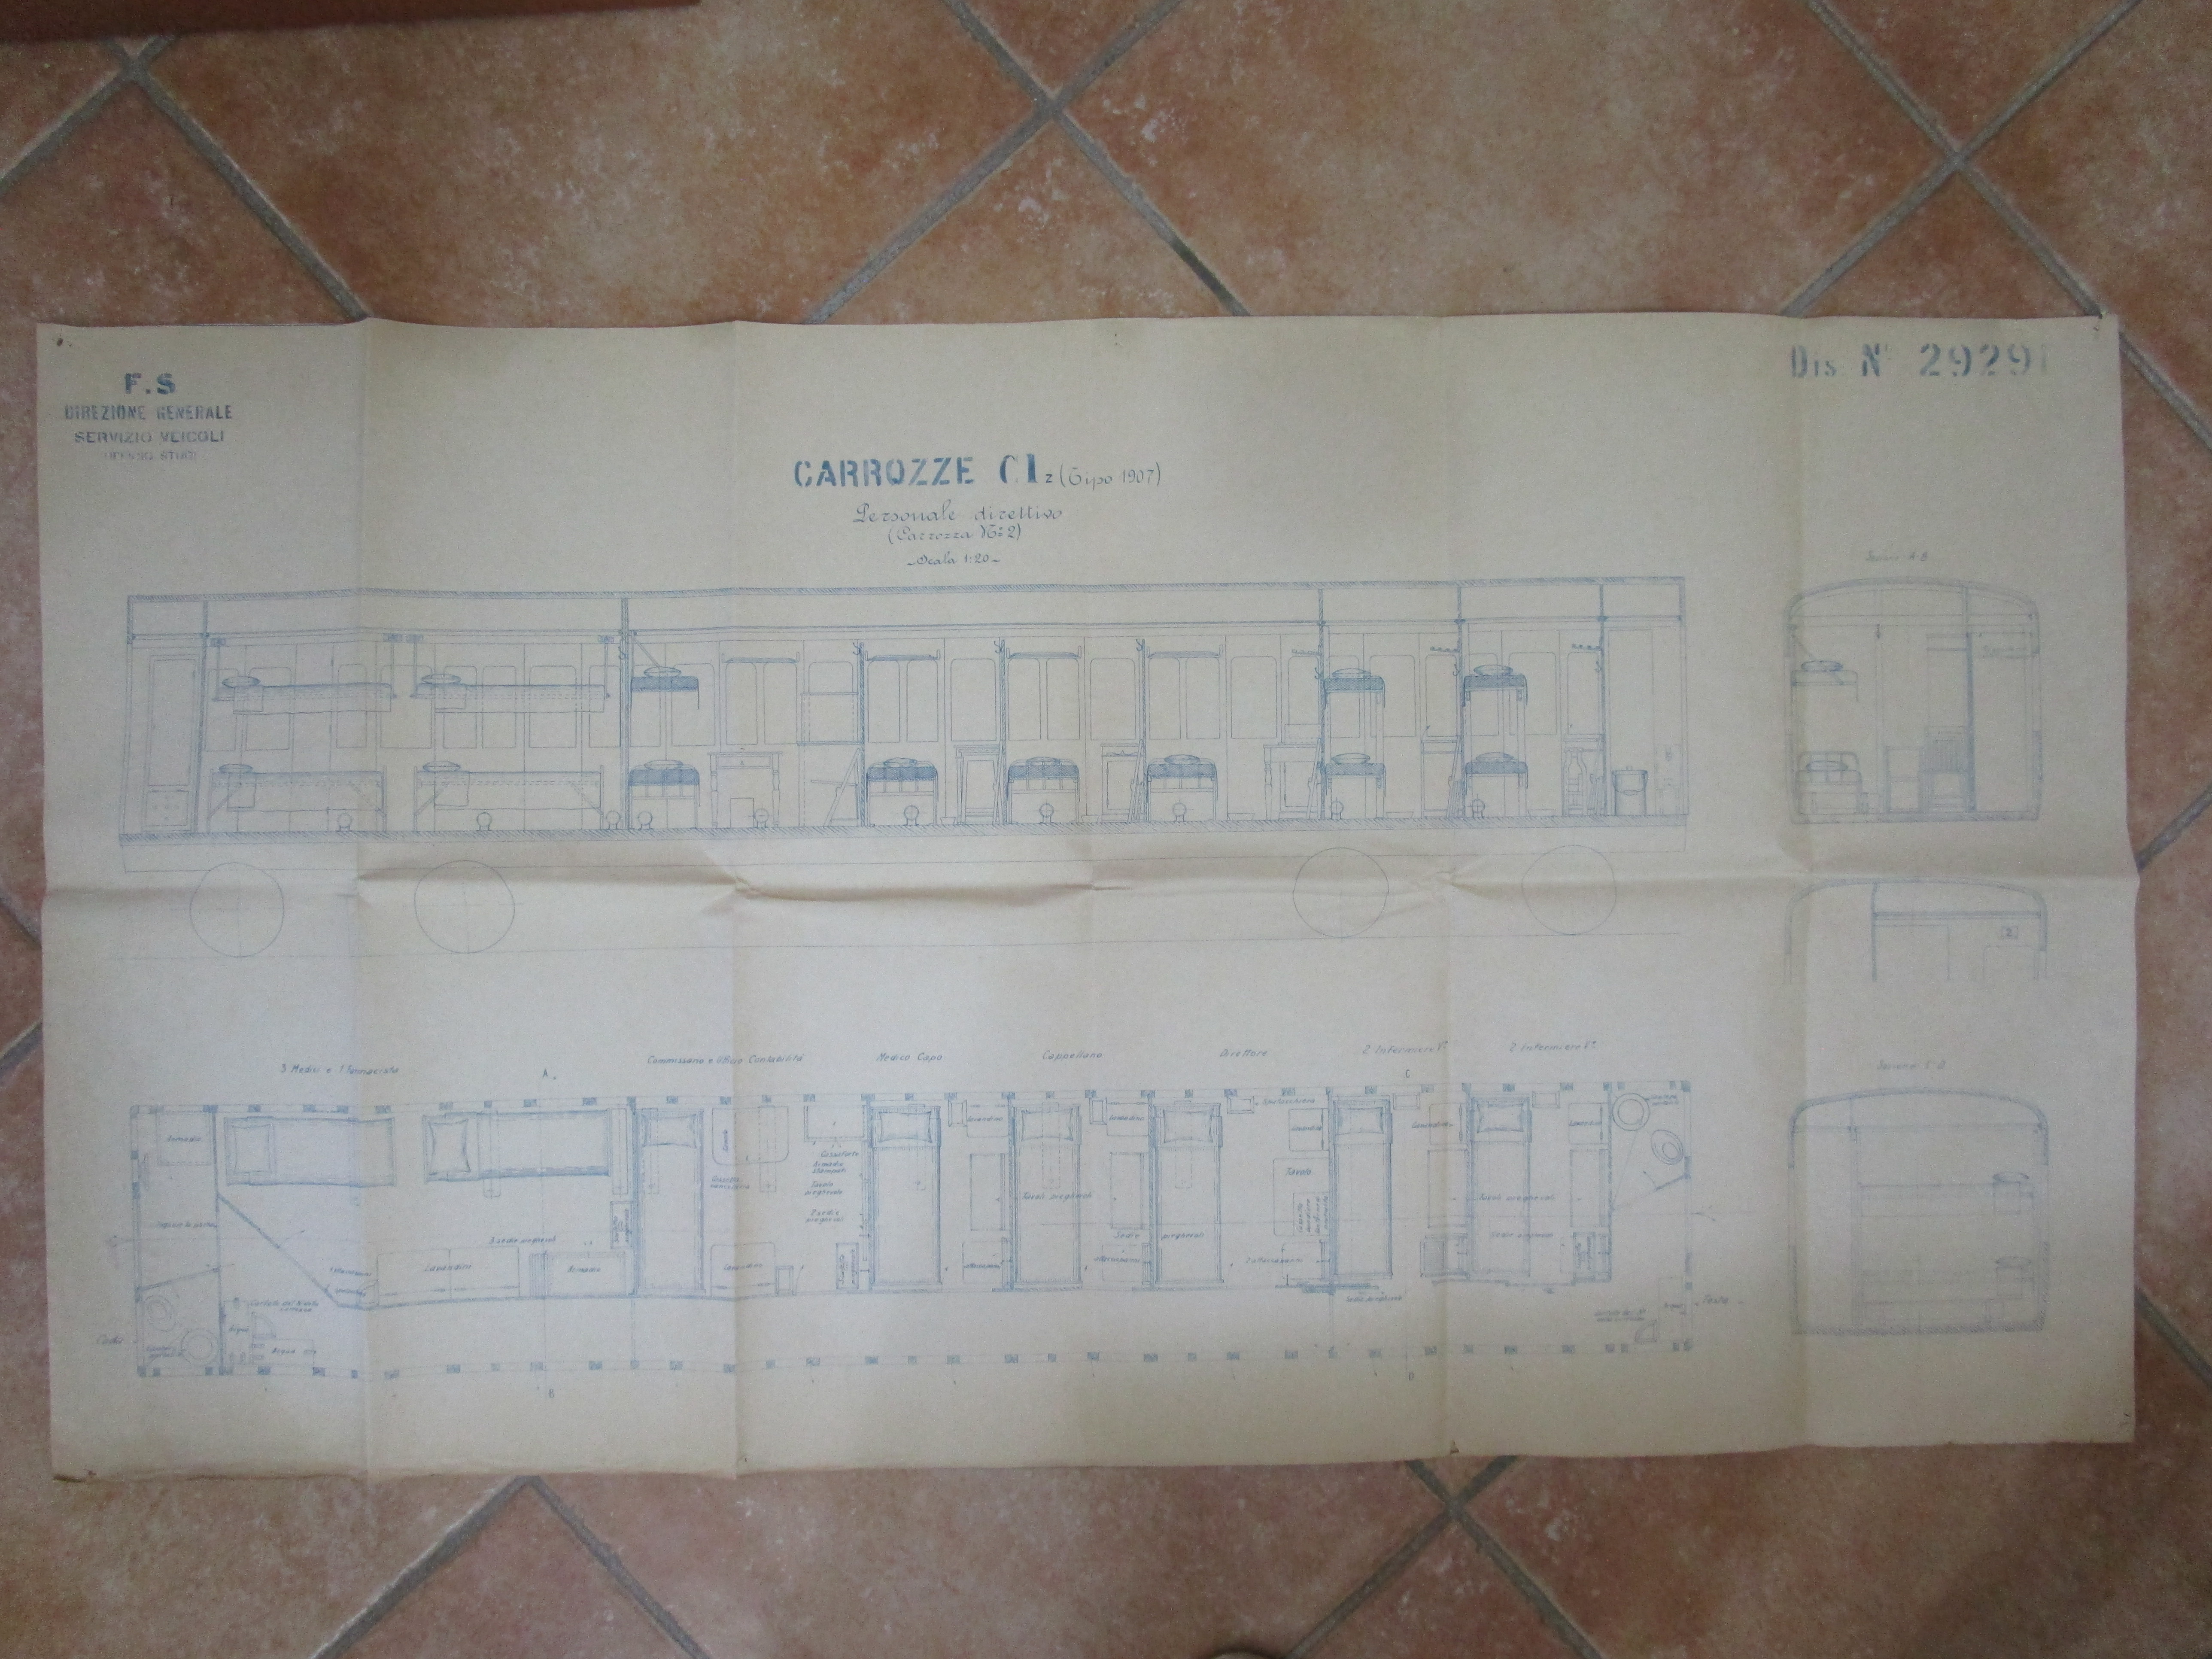 Carrozze Cl.1 tipo 1907 Personale direttivo (Carrozza N.2), Carrozza del personale direttivo (disegno tecnico, opera isolata) di Ferrovie dello Stato - ambito italiano (inizio XX ssecolo)